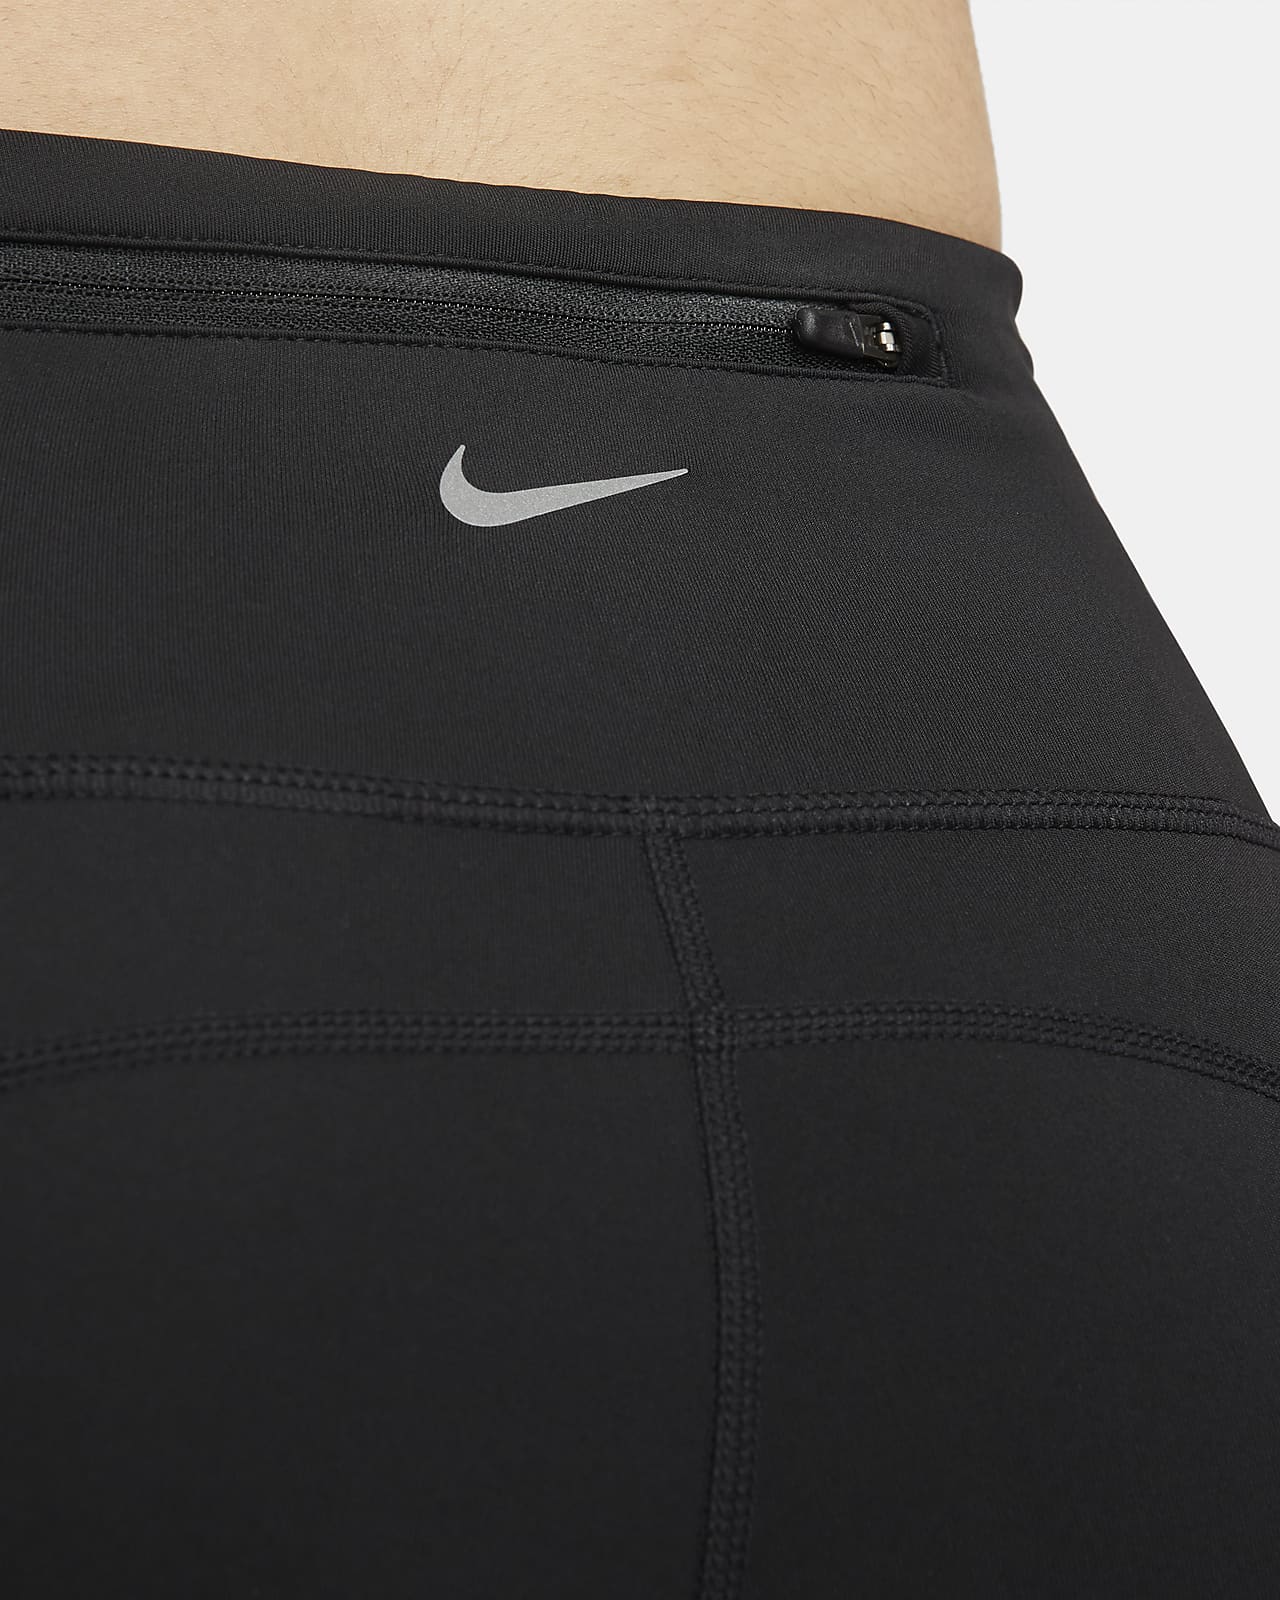 Buy Nike Men's Dri-Fit Tech Running Tights-Black-Medium at Amazon.in